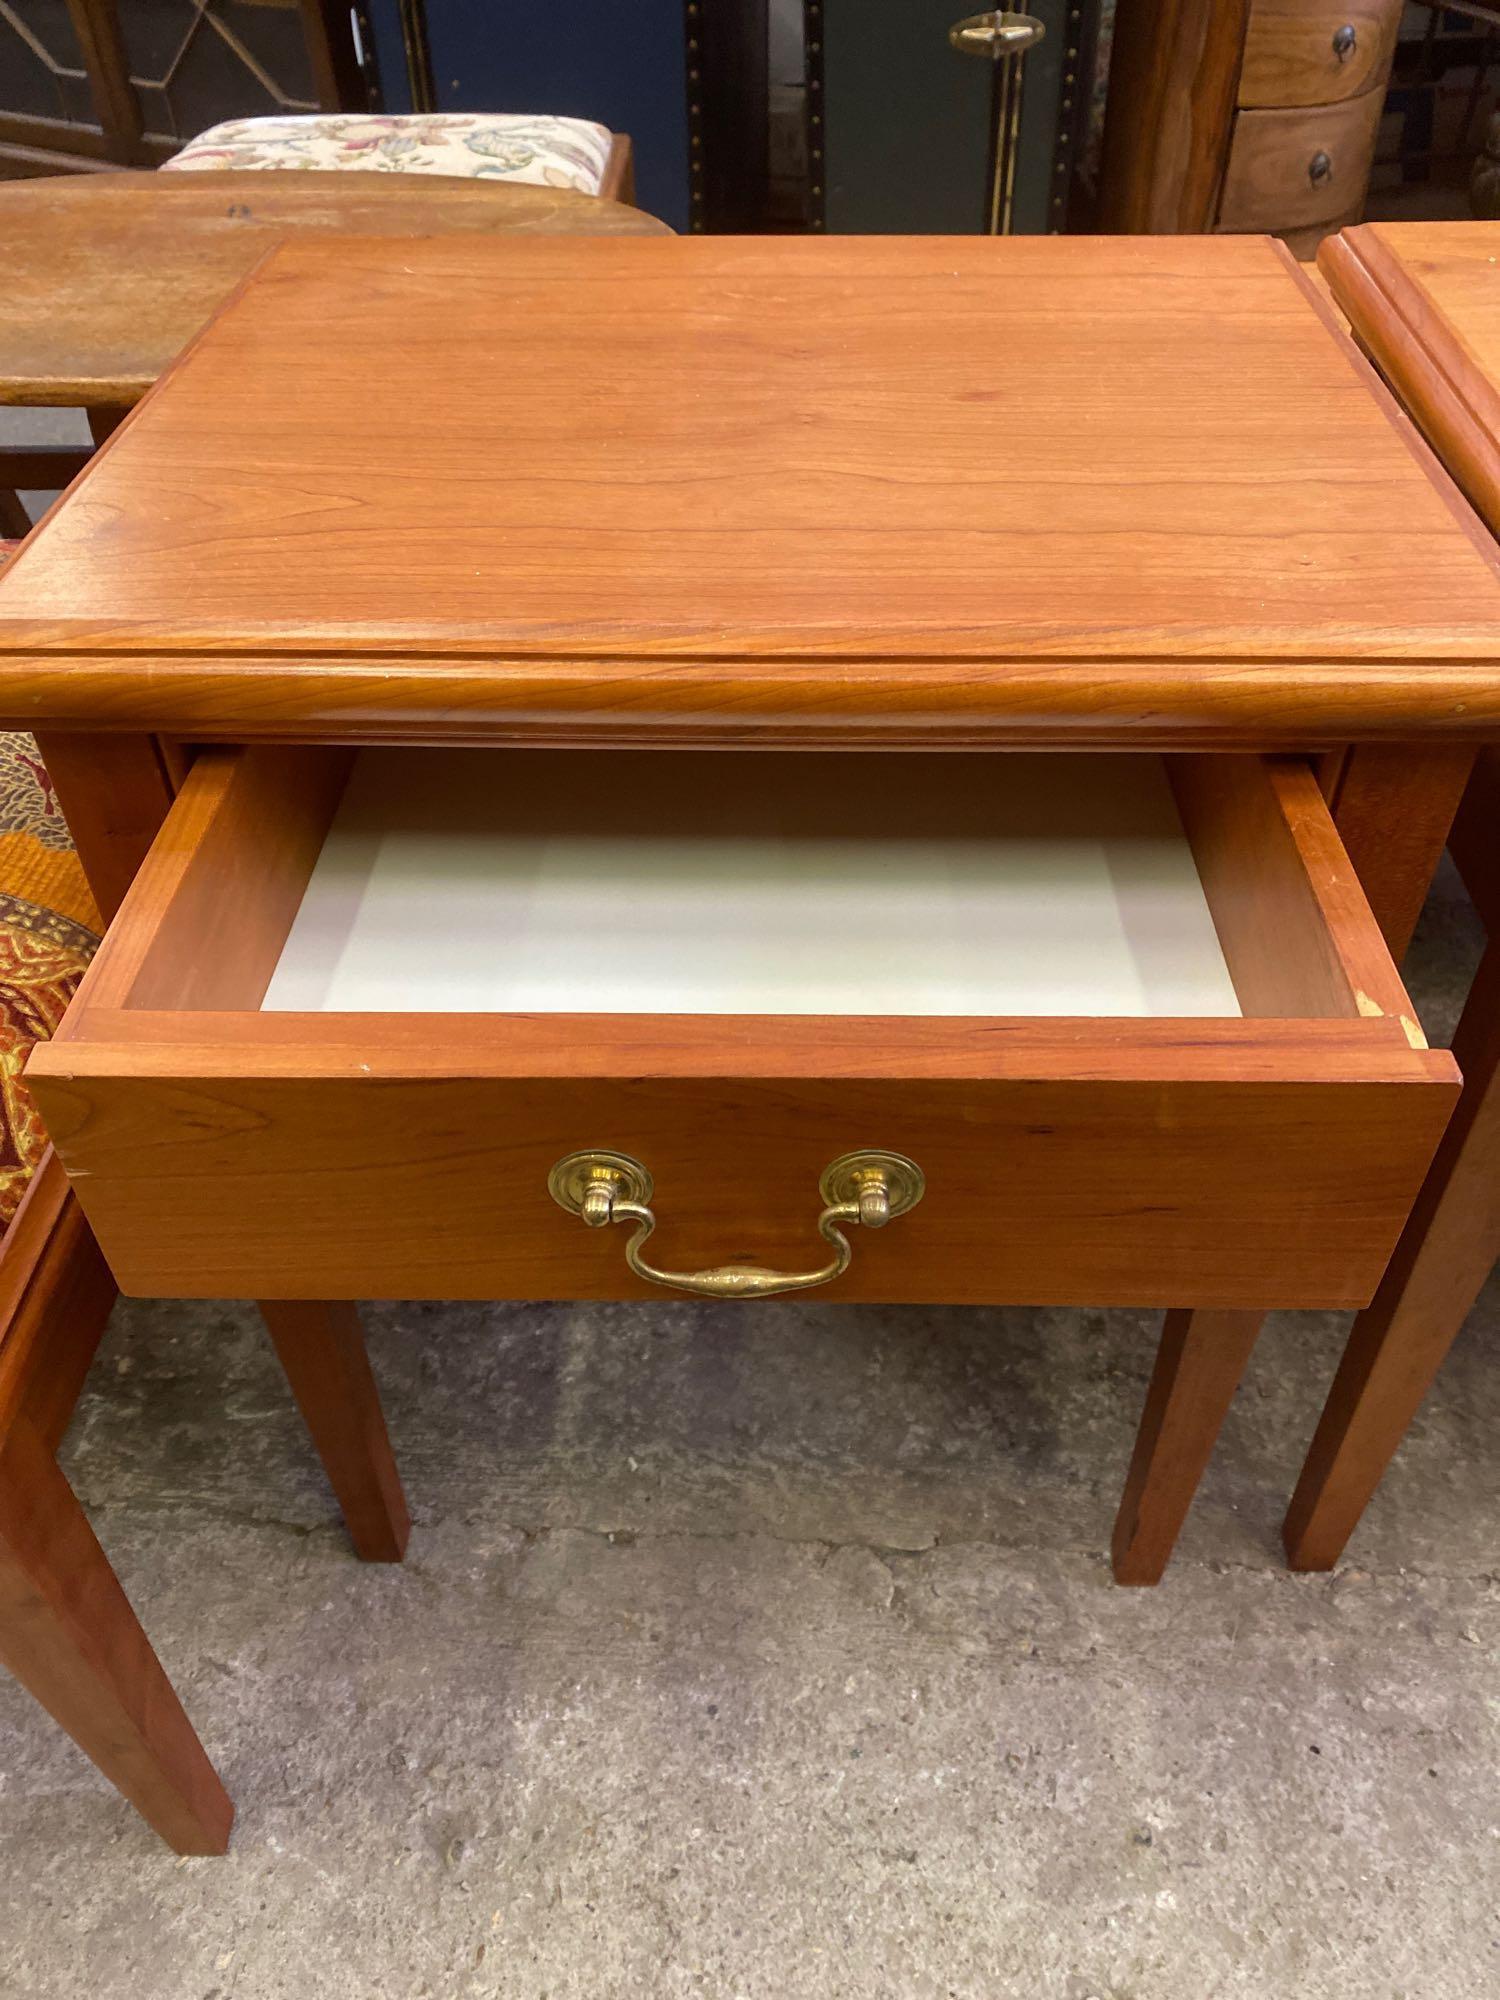 Pair of wood veneer side tables and upholstered veneer stool - Image 6 of 9